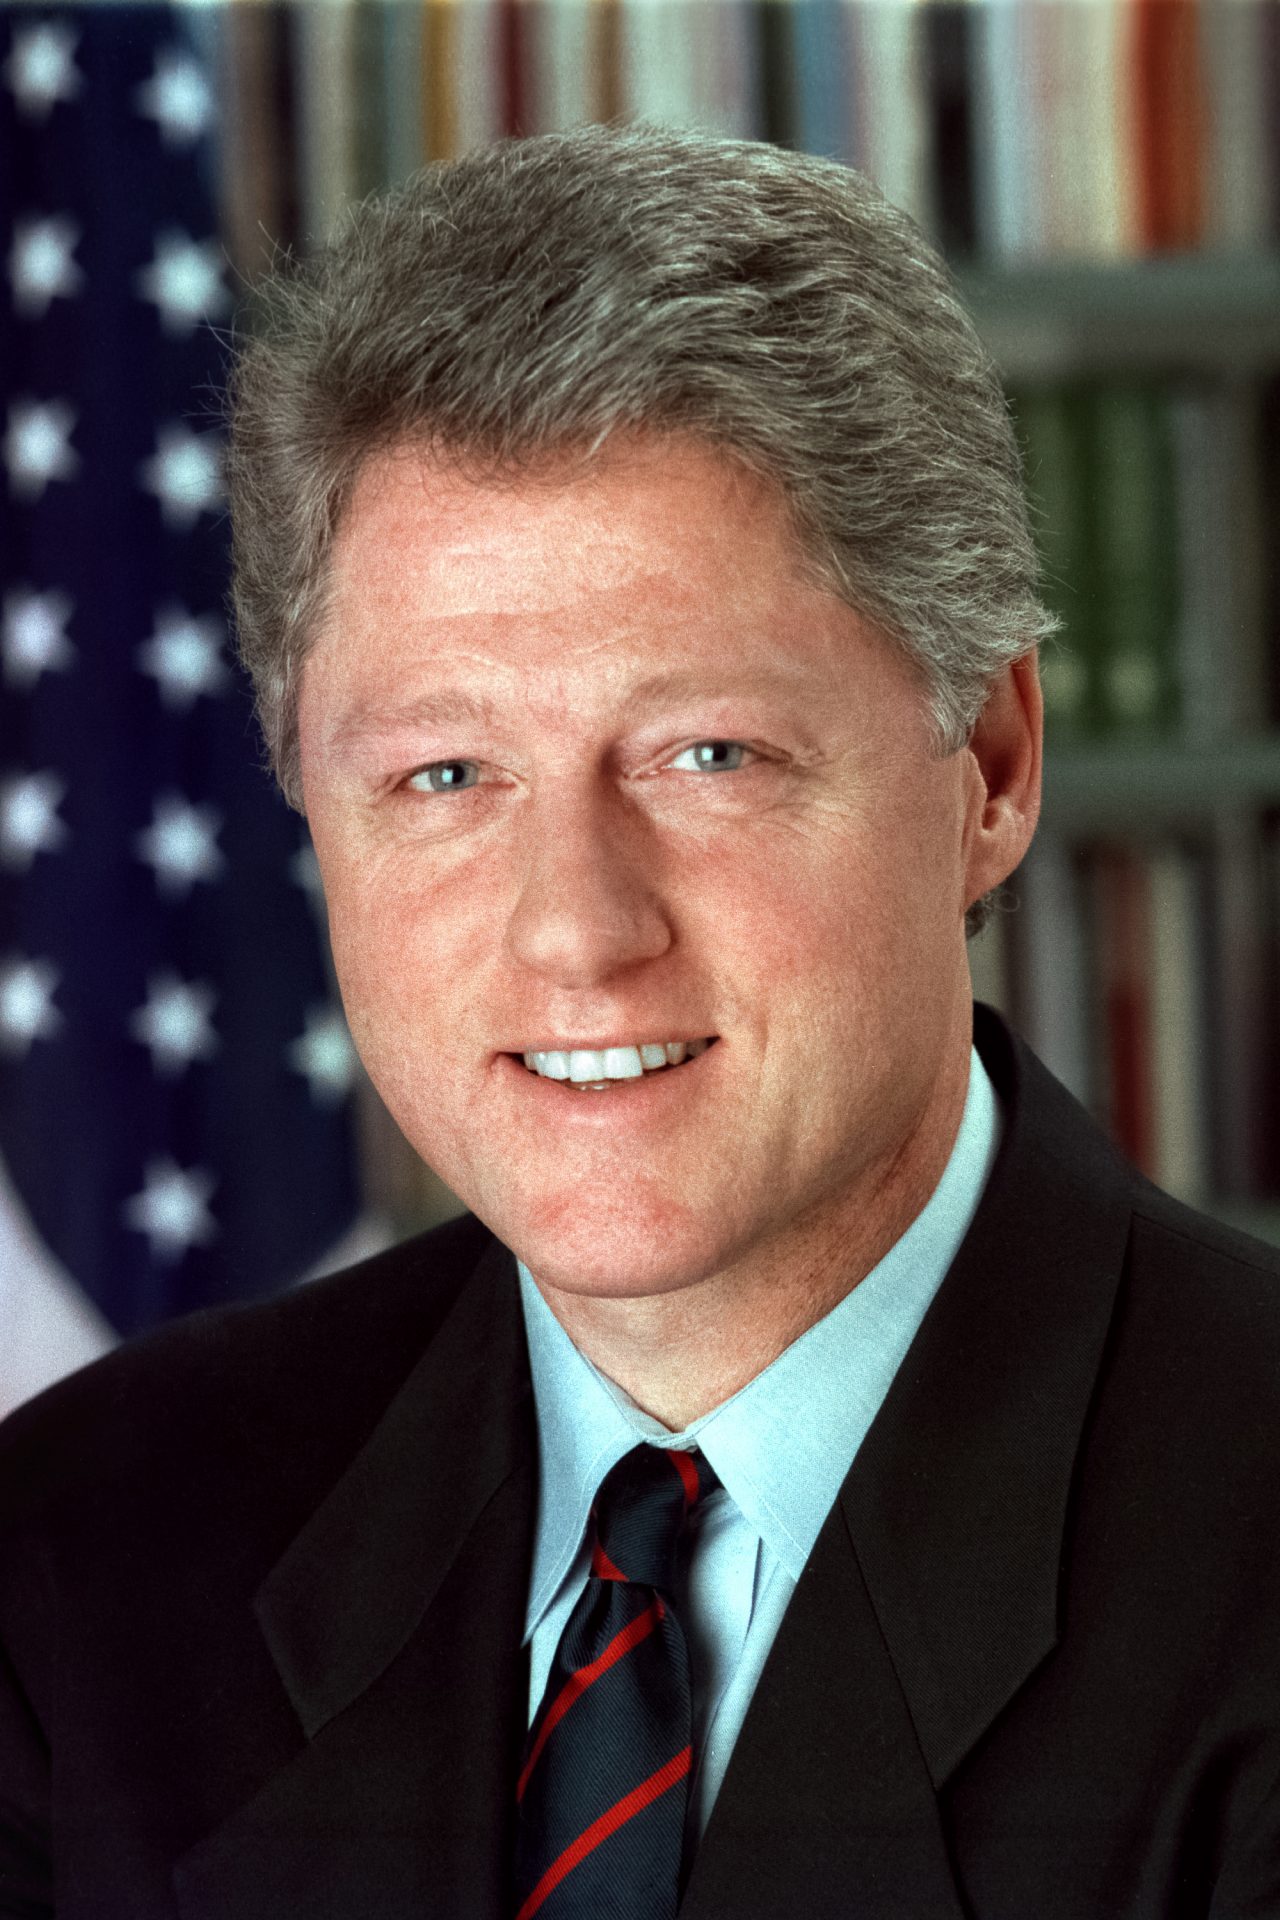 12. Bill Clinton 